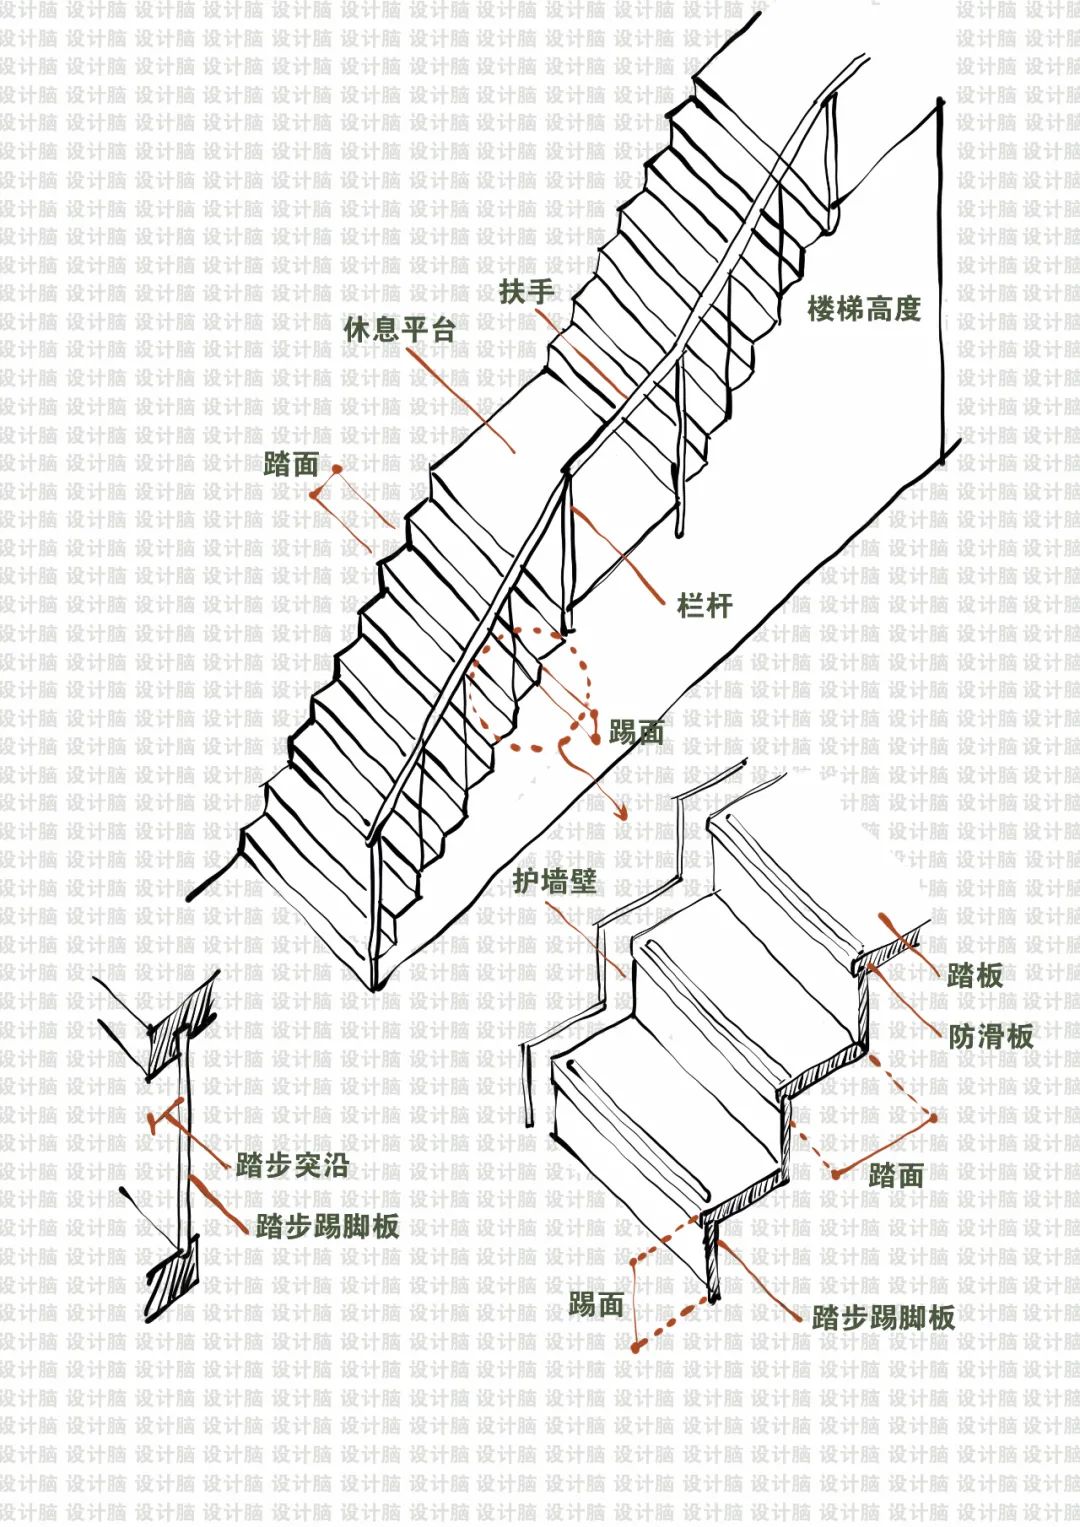 绘制楼梯详图的步骤图片